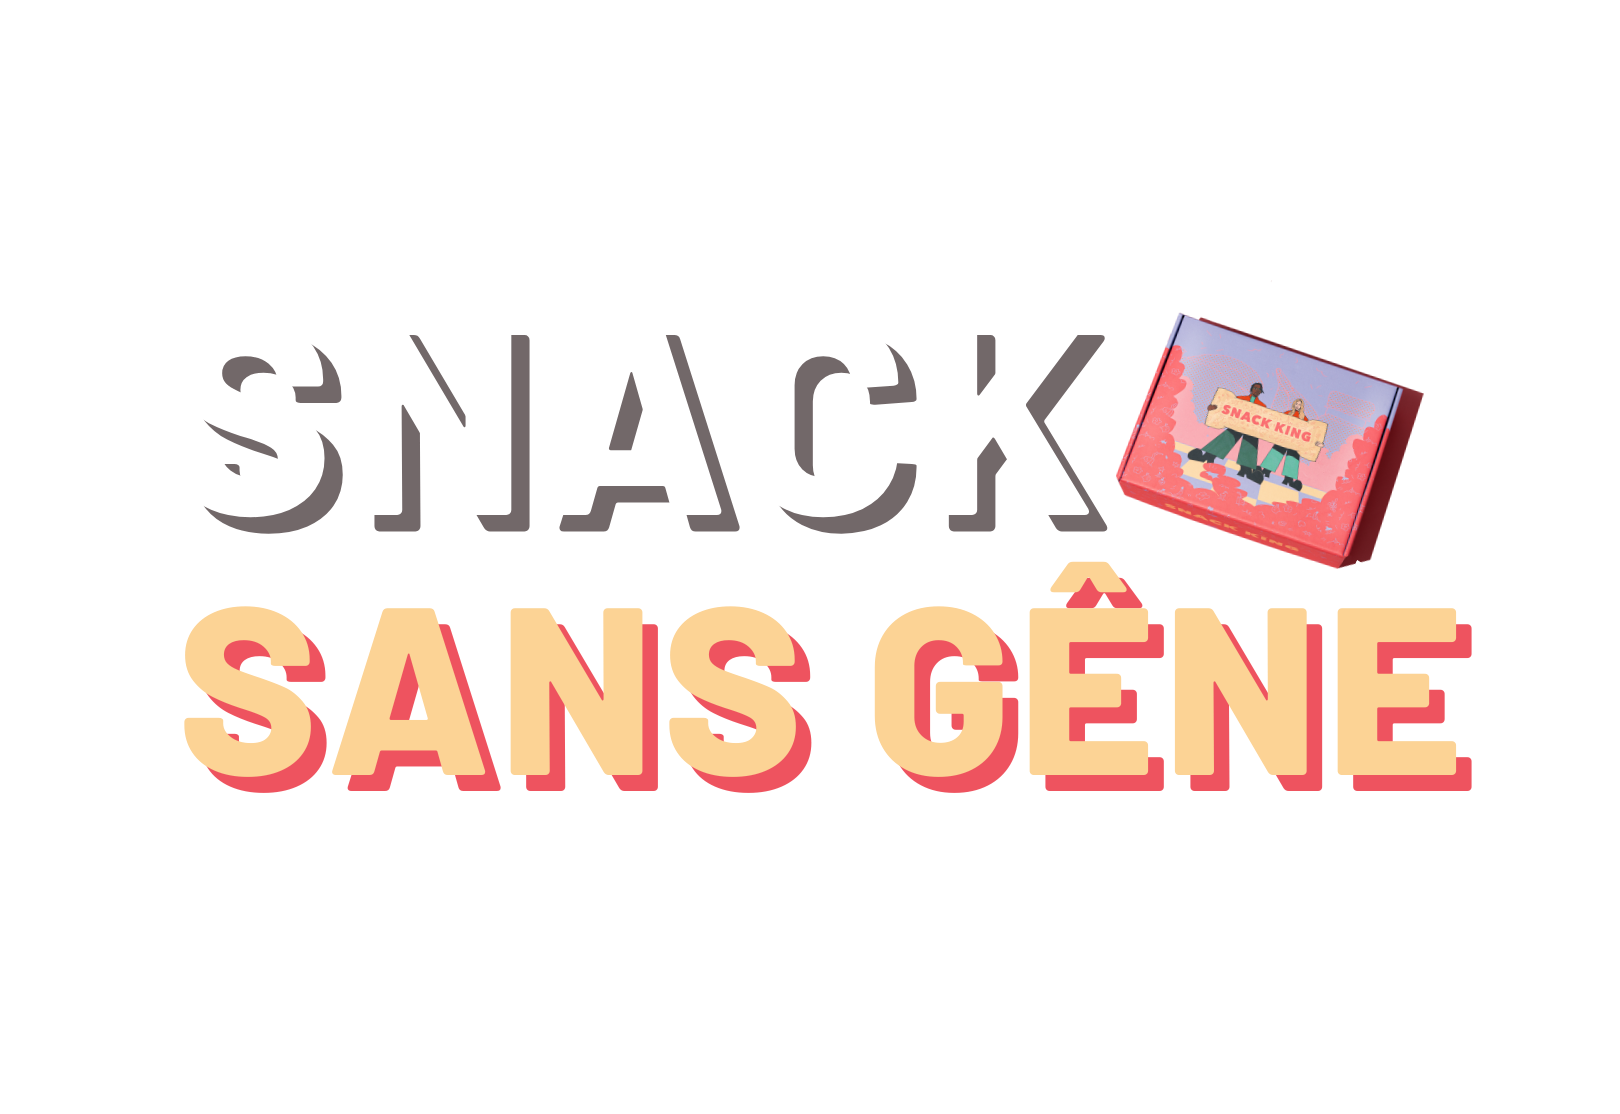 025316201114556-snack-sans-gene.png